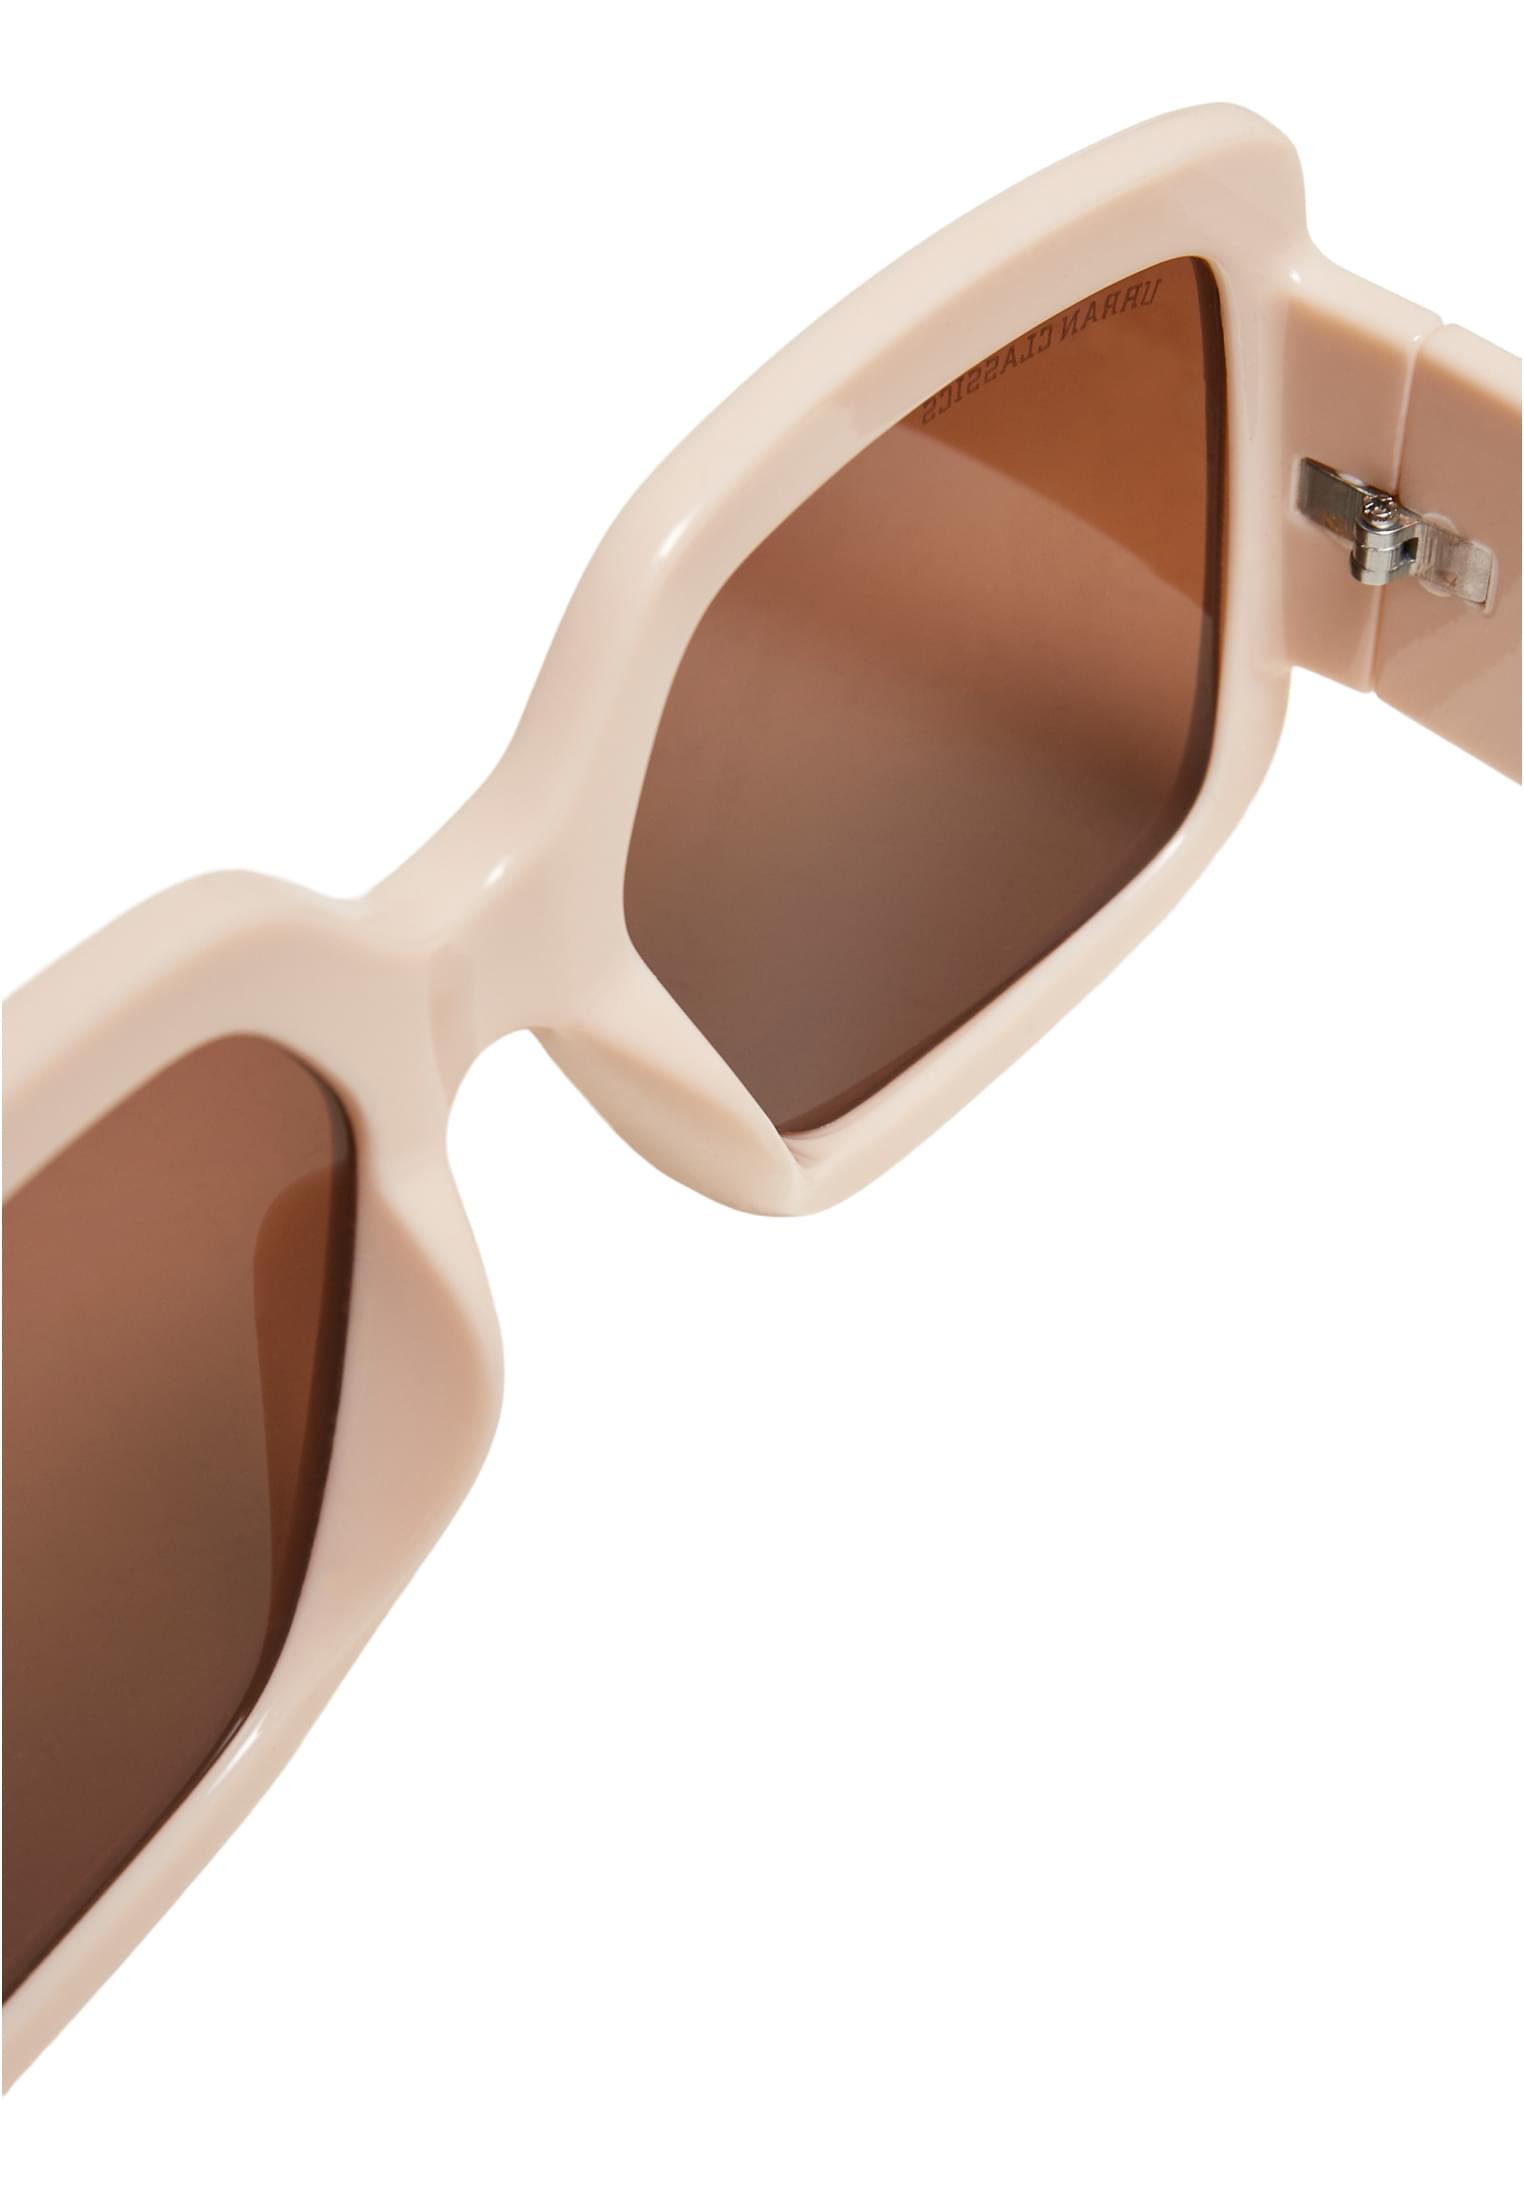 Sonnenbrillen Sunglasses Monaco in Farbe whitesand